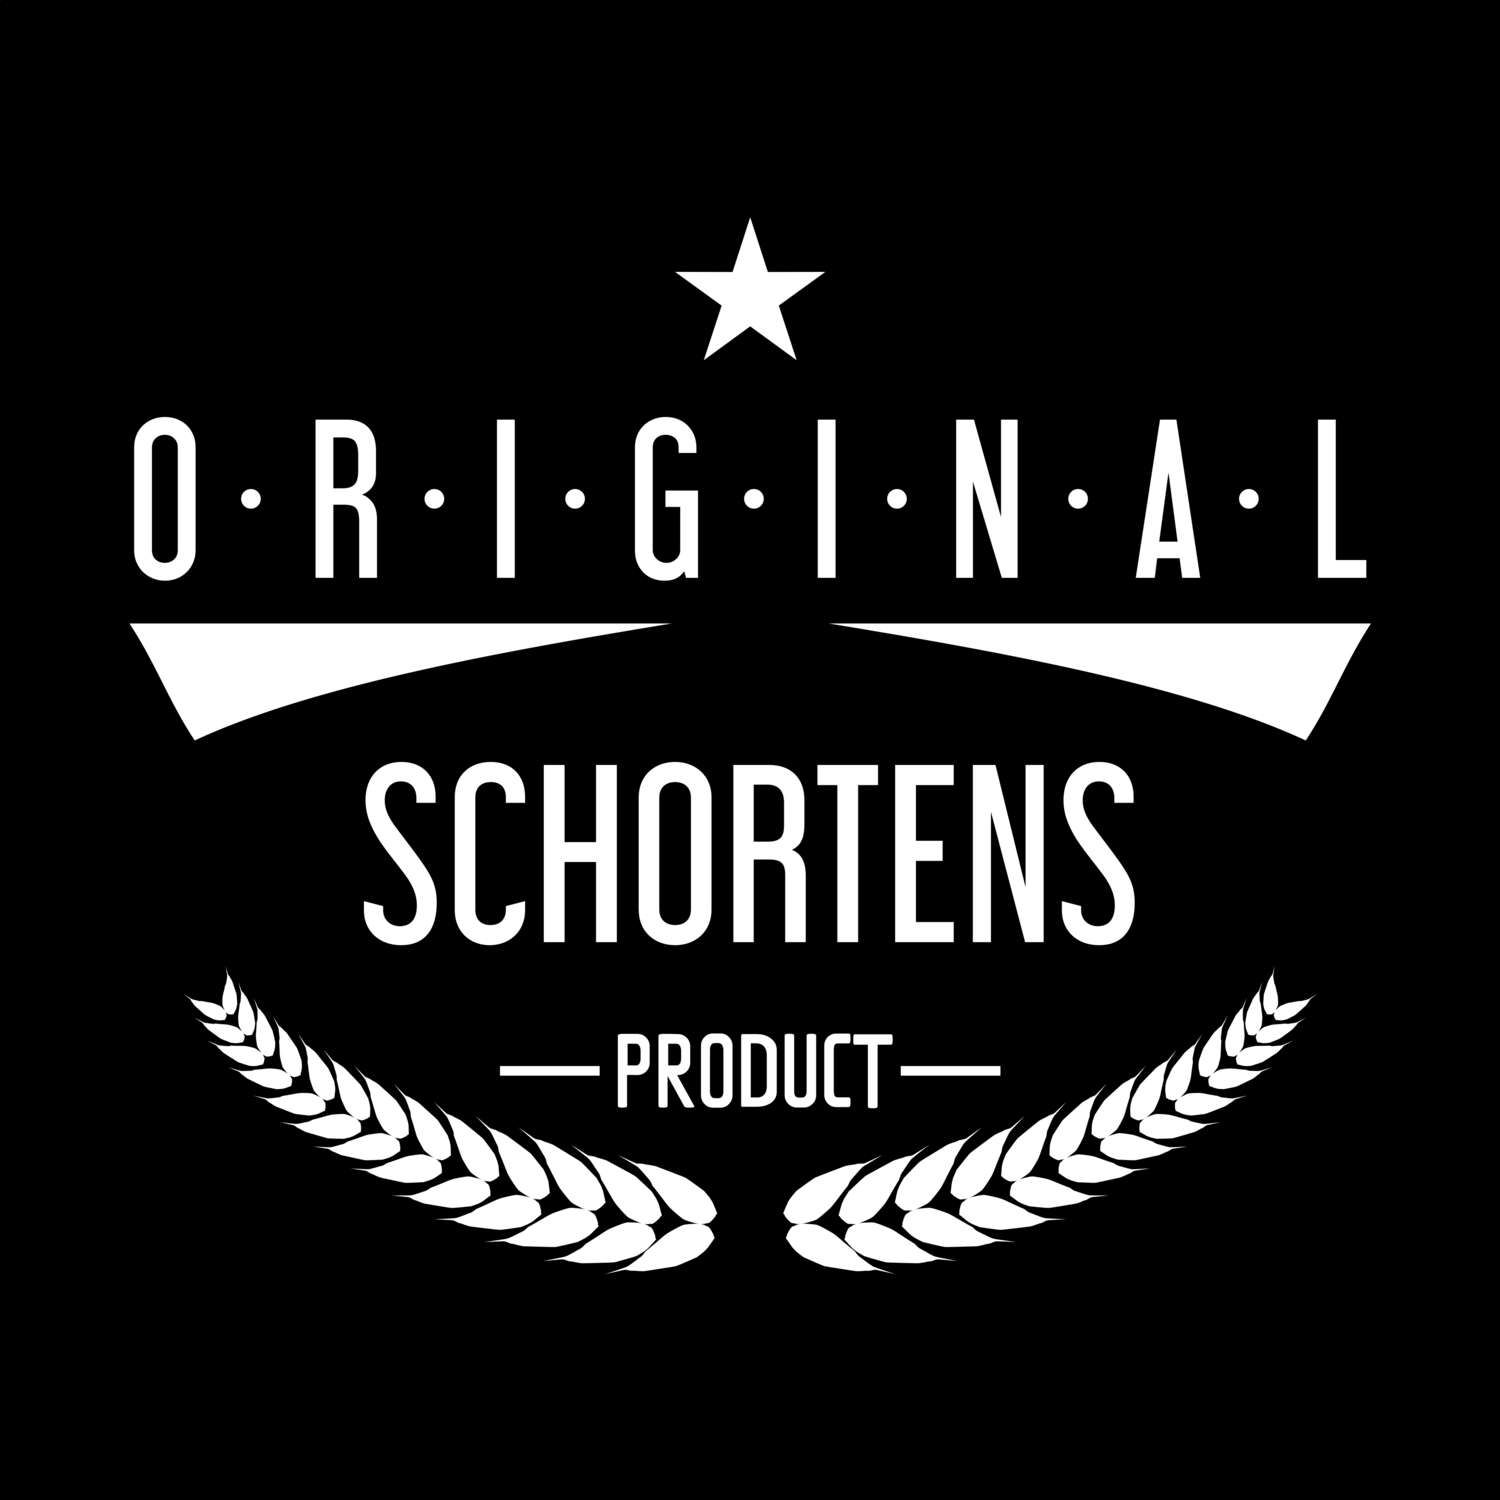 Schortens T-Shirt »Original Product«